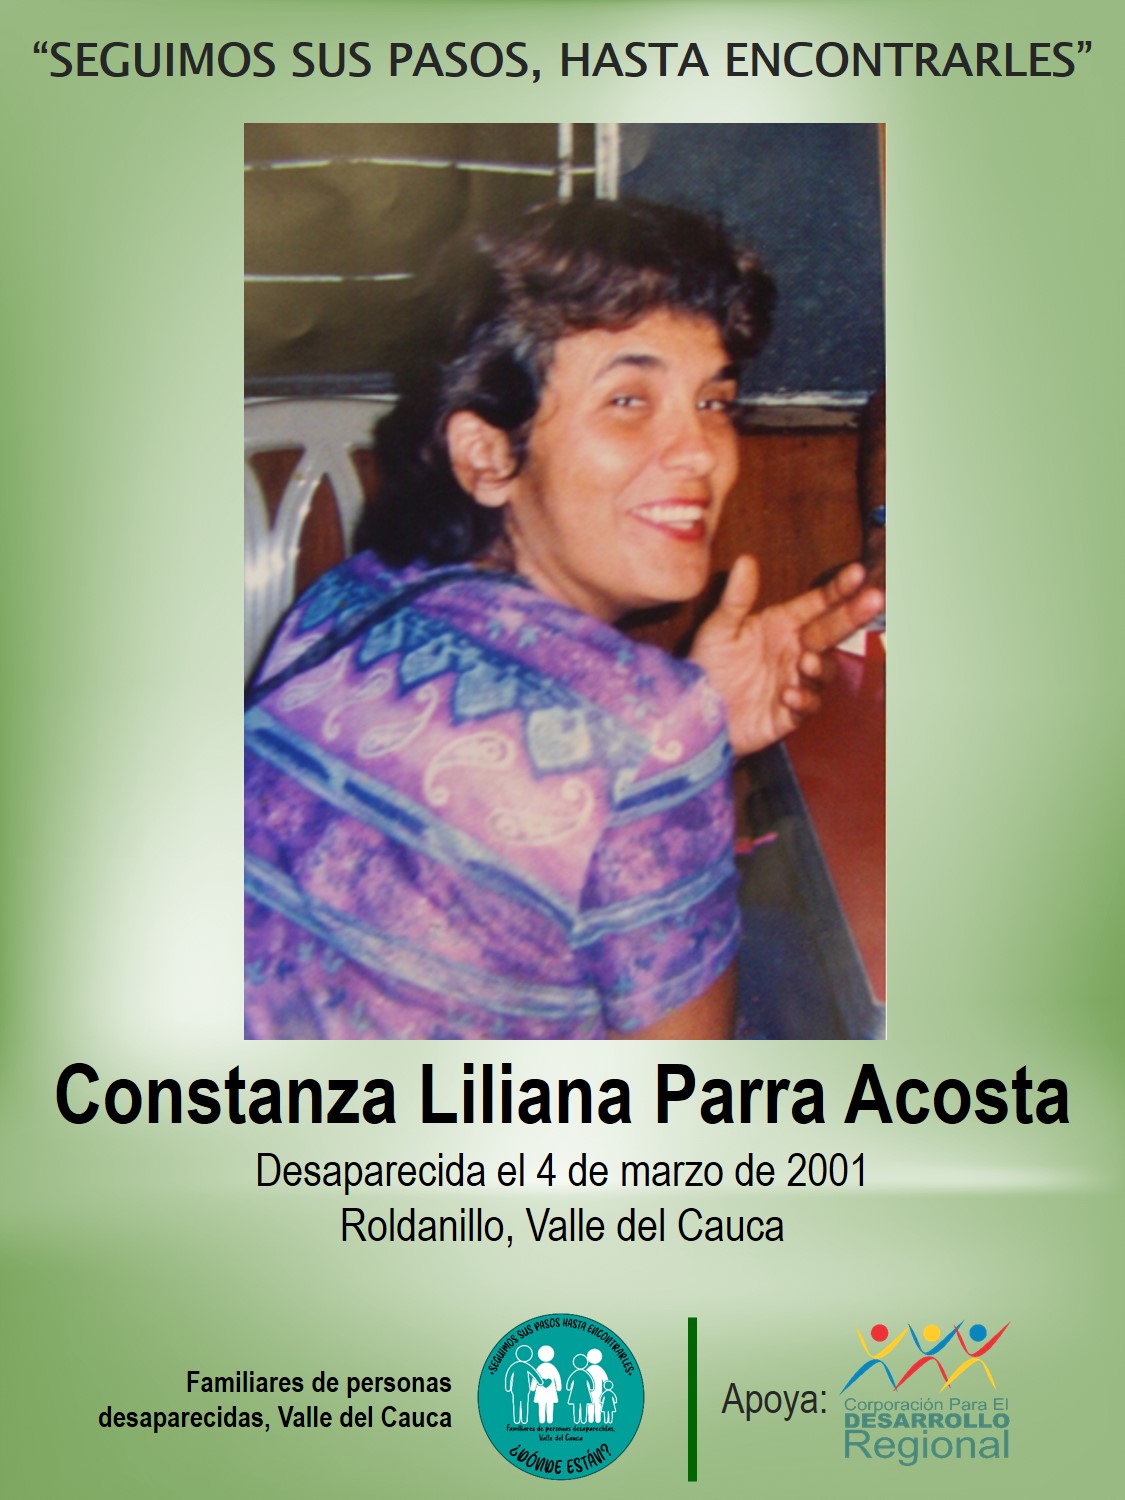 Constanza Liliana Parra Acosta